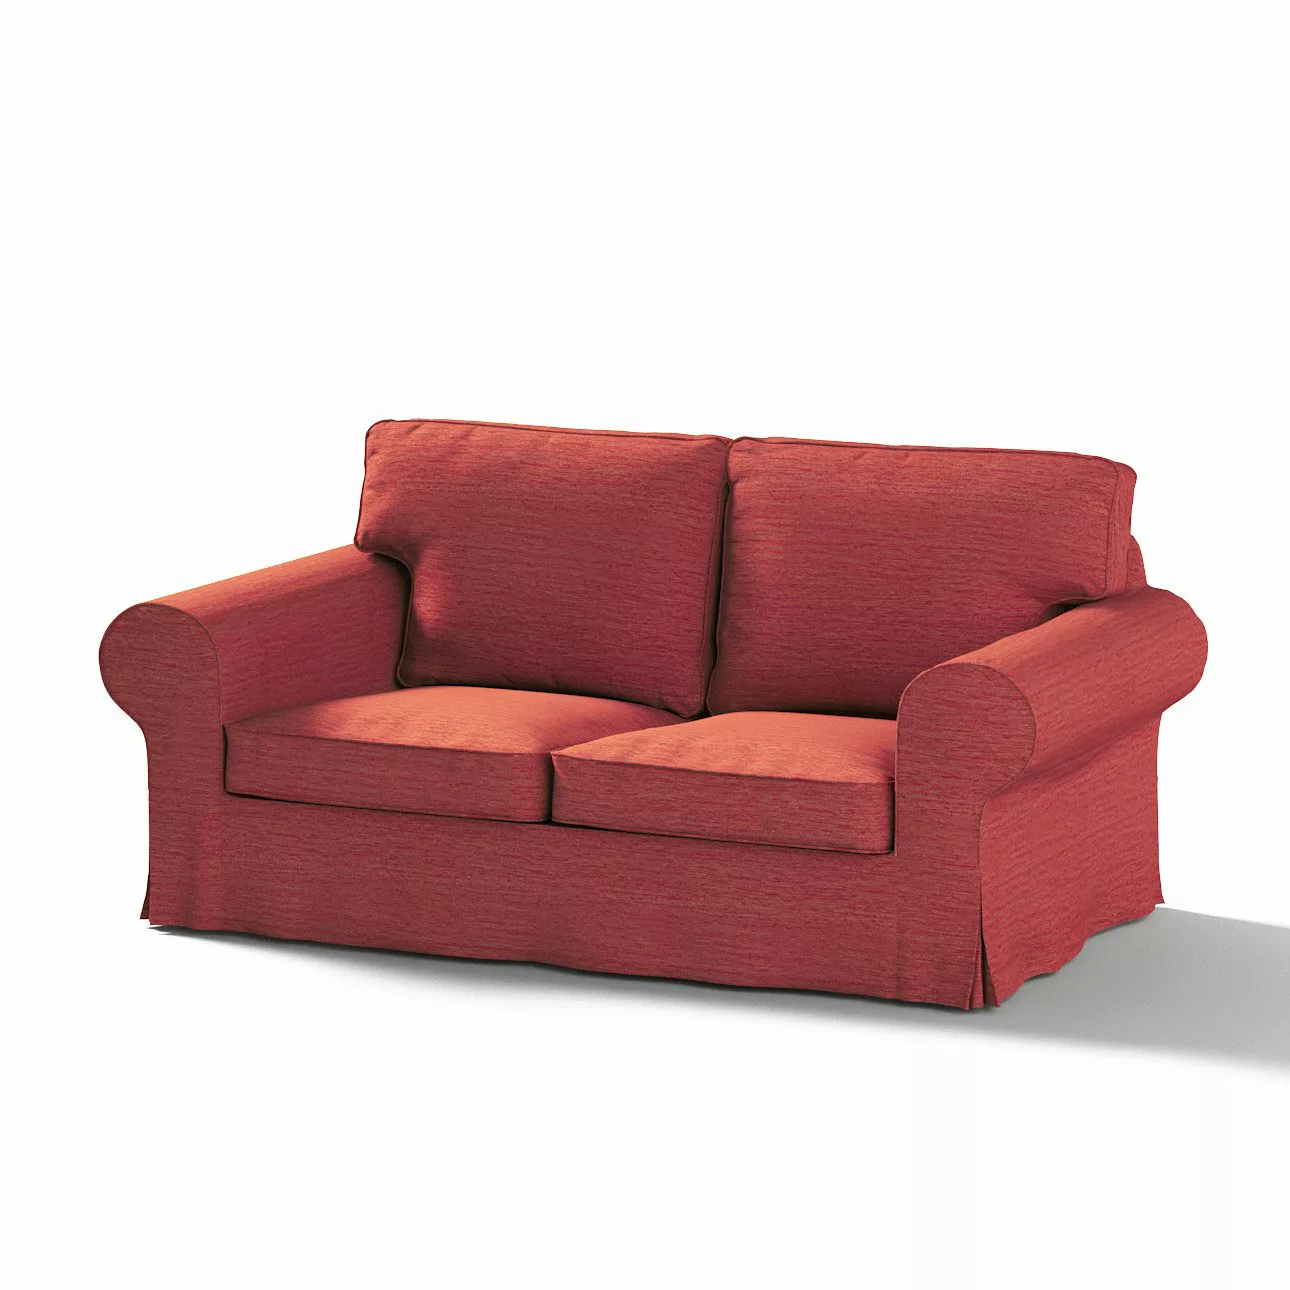 Bezug für Ektorp 2-Sitzer Schlafsofa NEUES Modell, ziegelrot, Sofabezug für günstig online kaufen